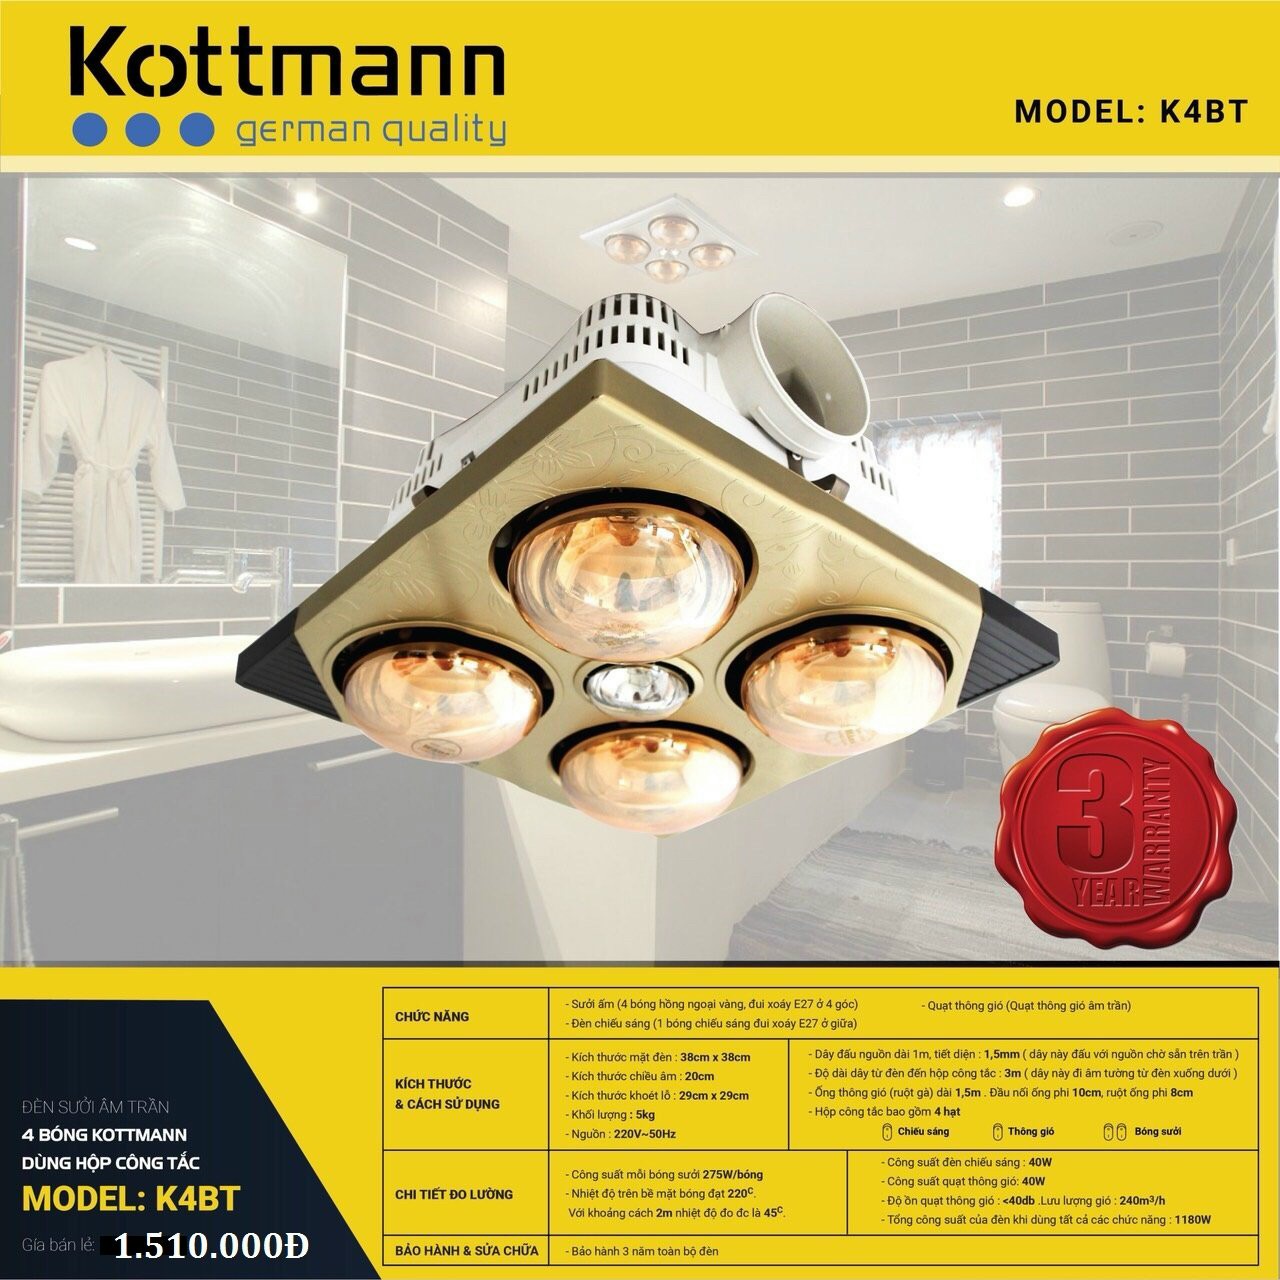 Đèn sưởi Kottmann âm trần K4BT nhập khẩu nguyên chiếc